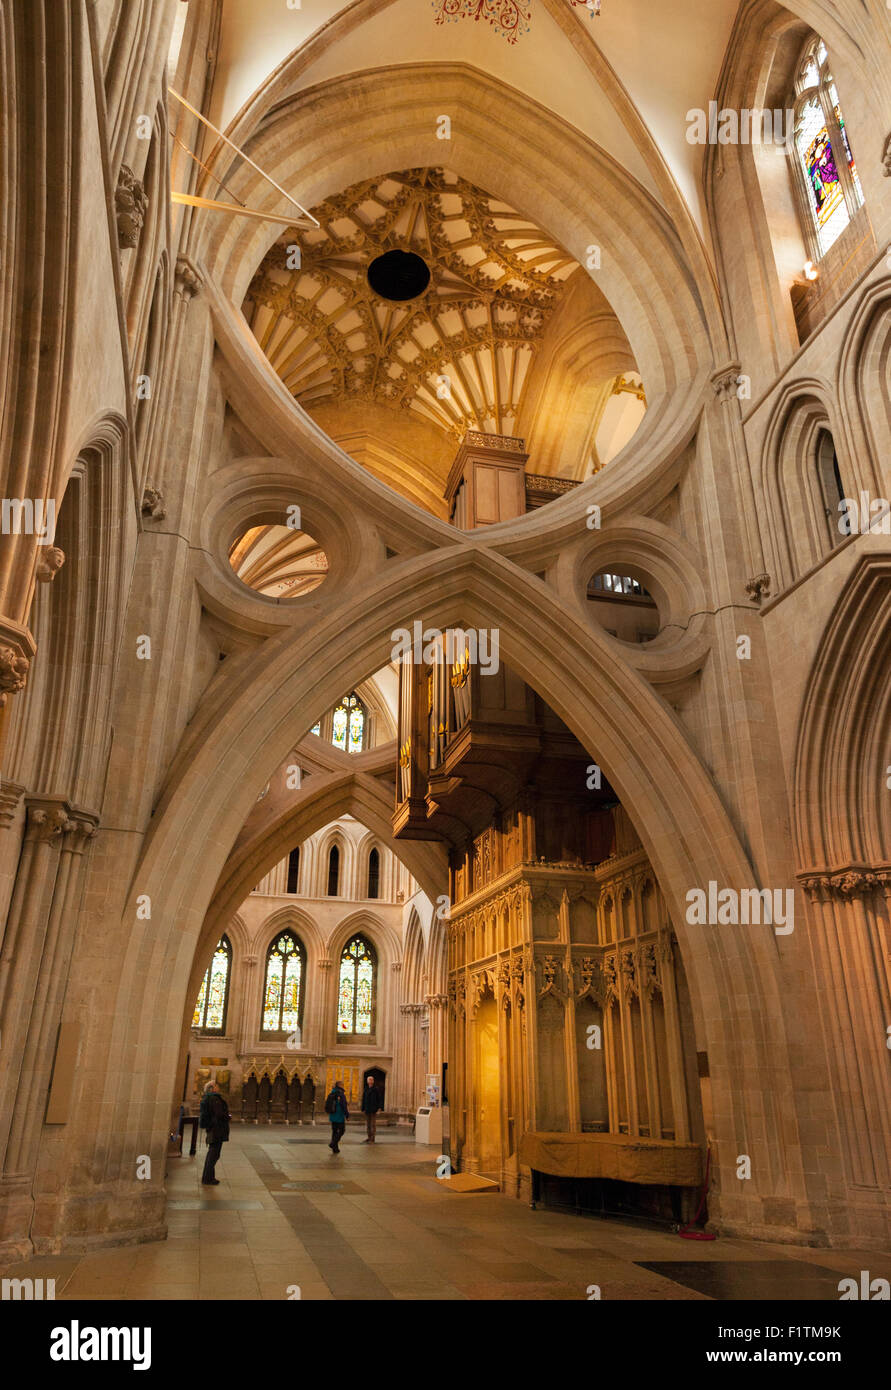 Il " forbice archi" - un esempio del XII secolo architettura medievale; gli interni della Cattedrale di Wells, Somerset, Inghilterra, Regno Unito Foto Stock